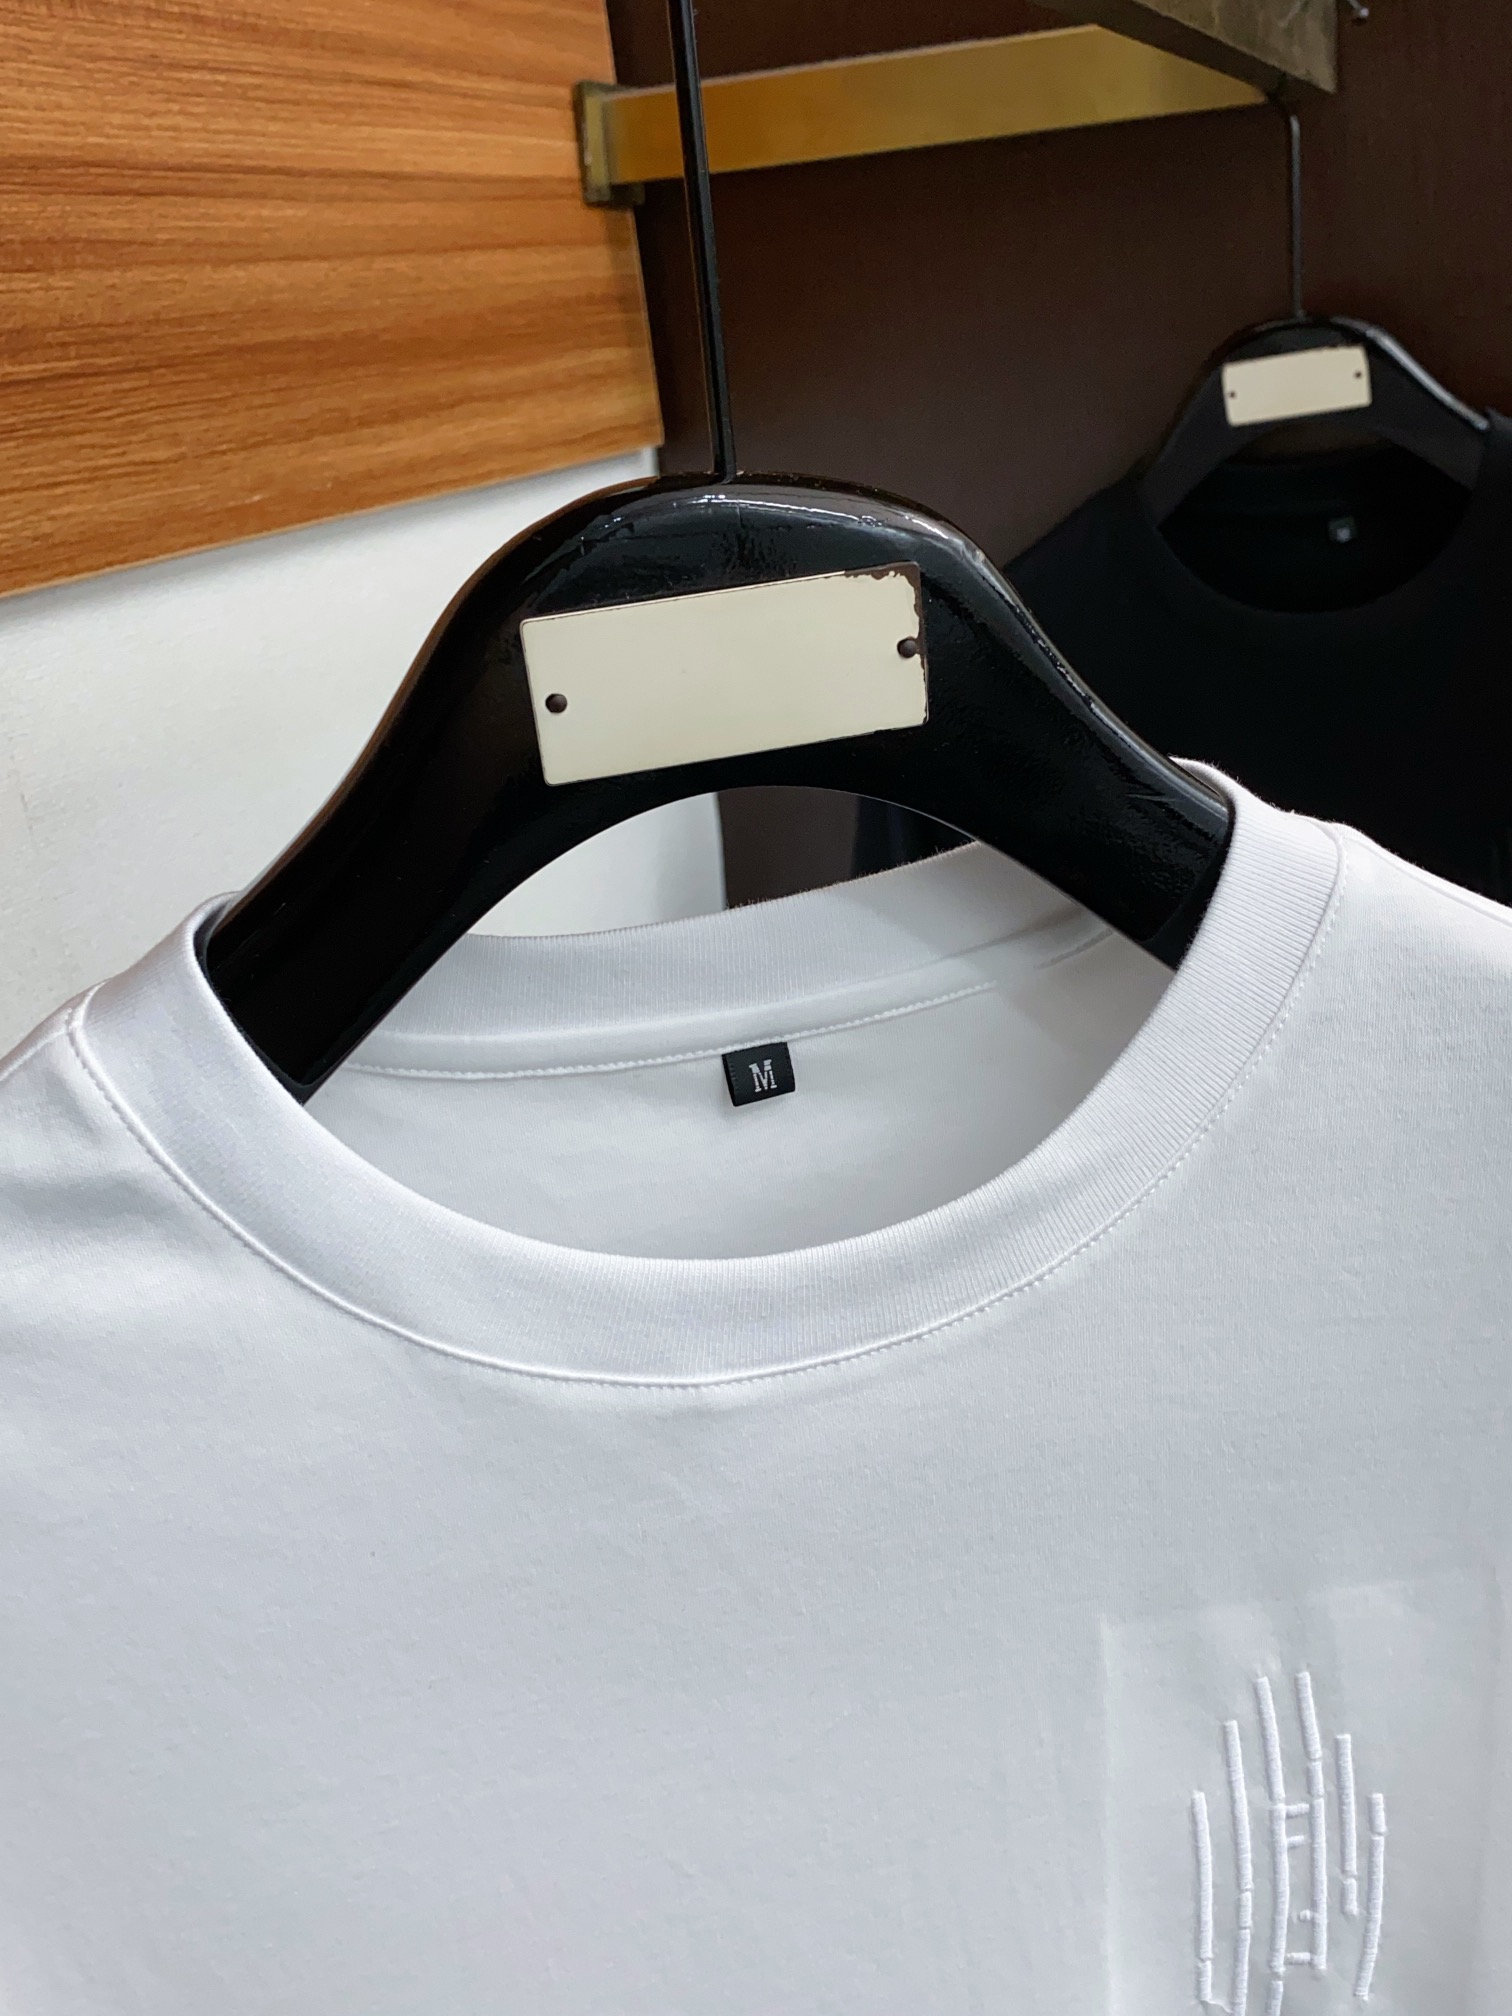 fendi ワイシャツスーパーコピー トップス 綿100% プリント 短袖 ゆったり シンプル 柔らかい メンズ ホワイト_3